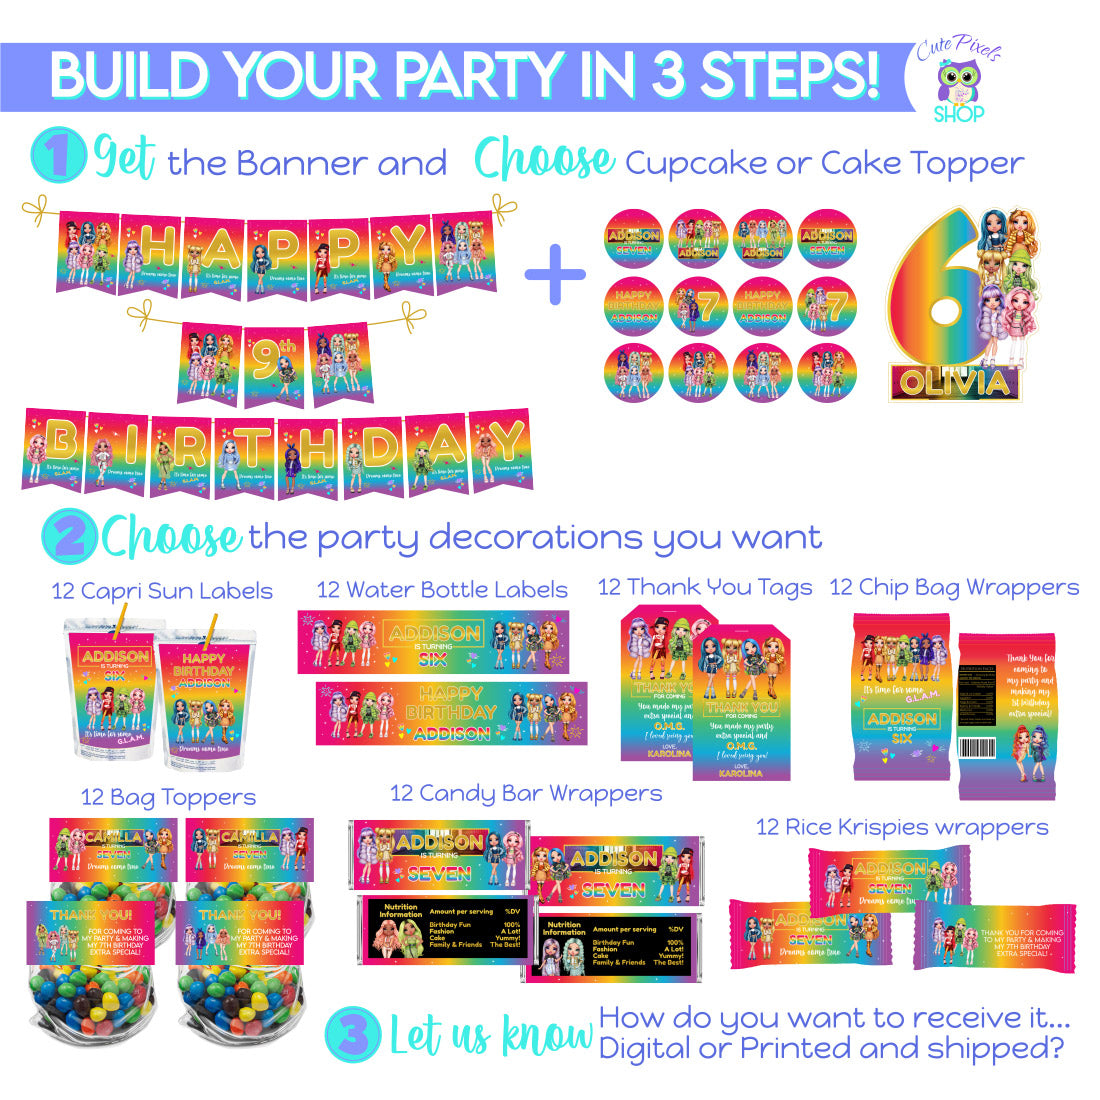 EDITABLE Rainbow Party Favor Tags Rainbow Birthday Rainbow Party